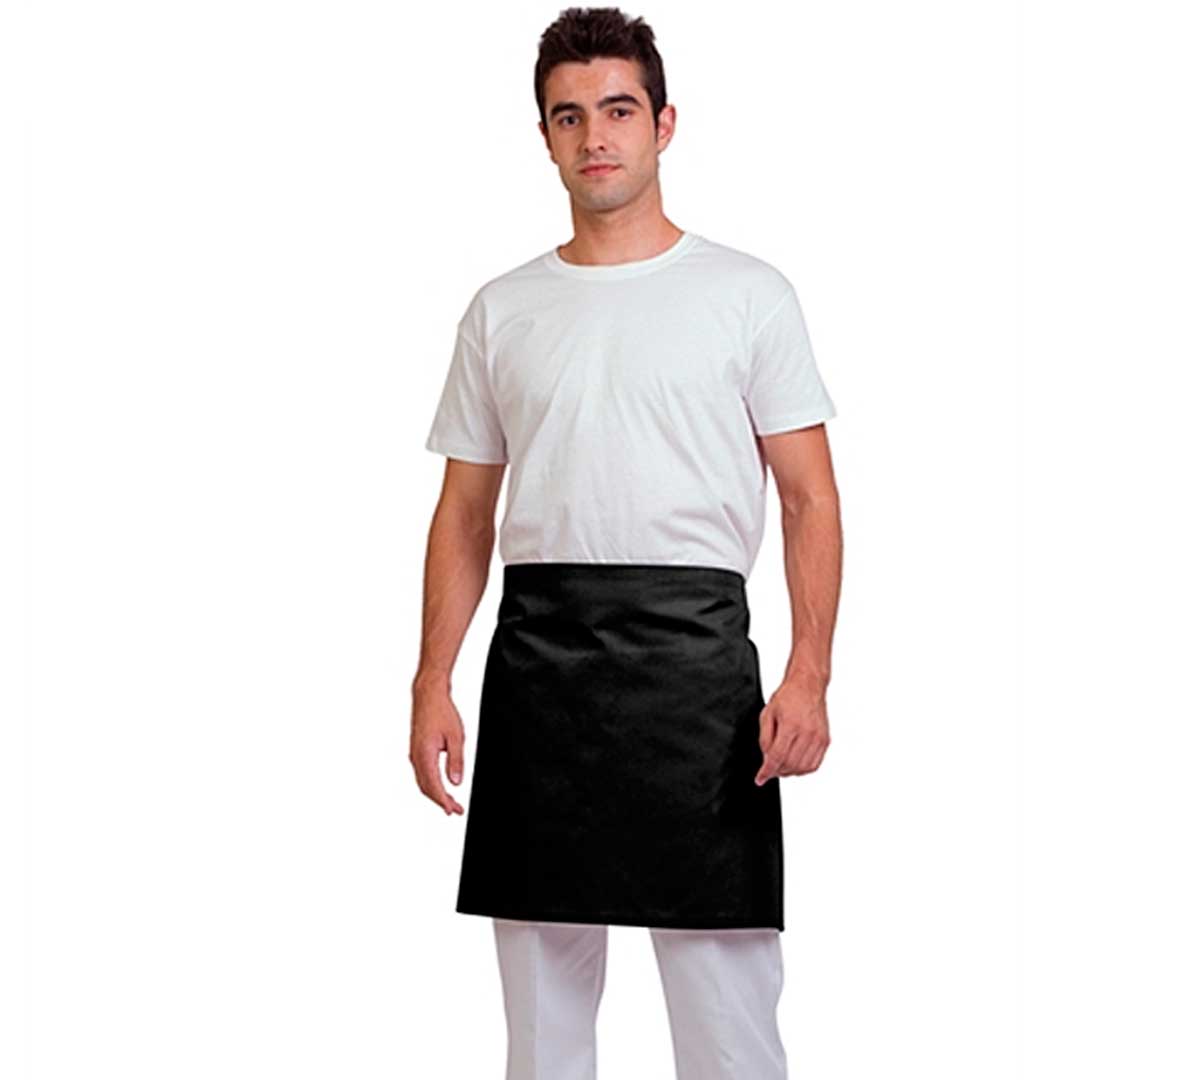 Delantal negro 100% algodón - Sartenes y utensilios de cocina profesional